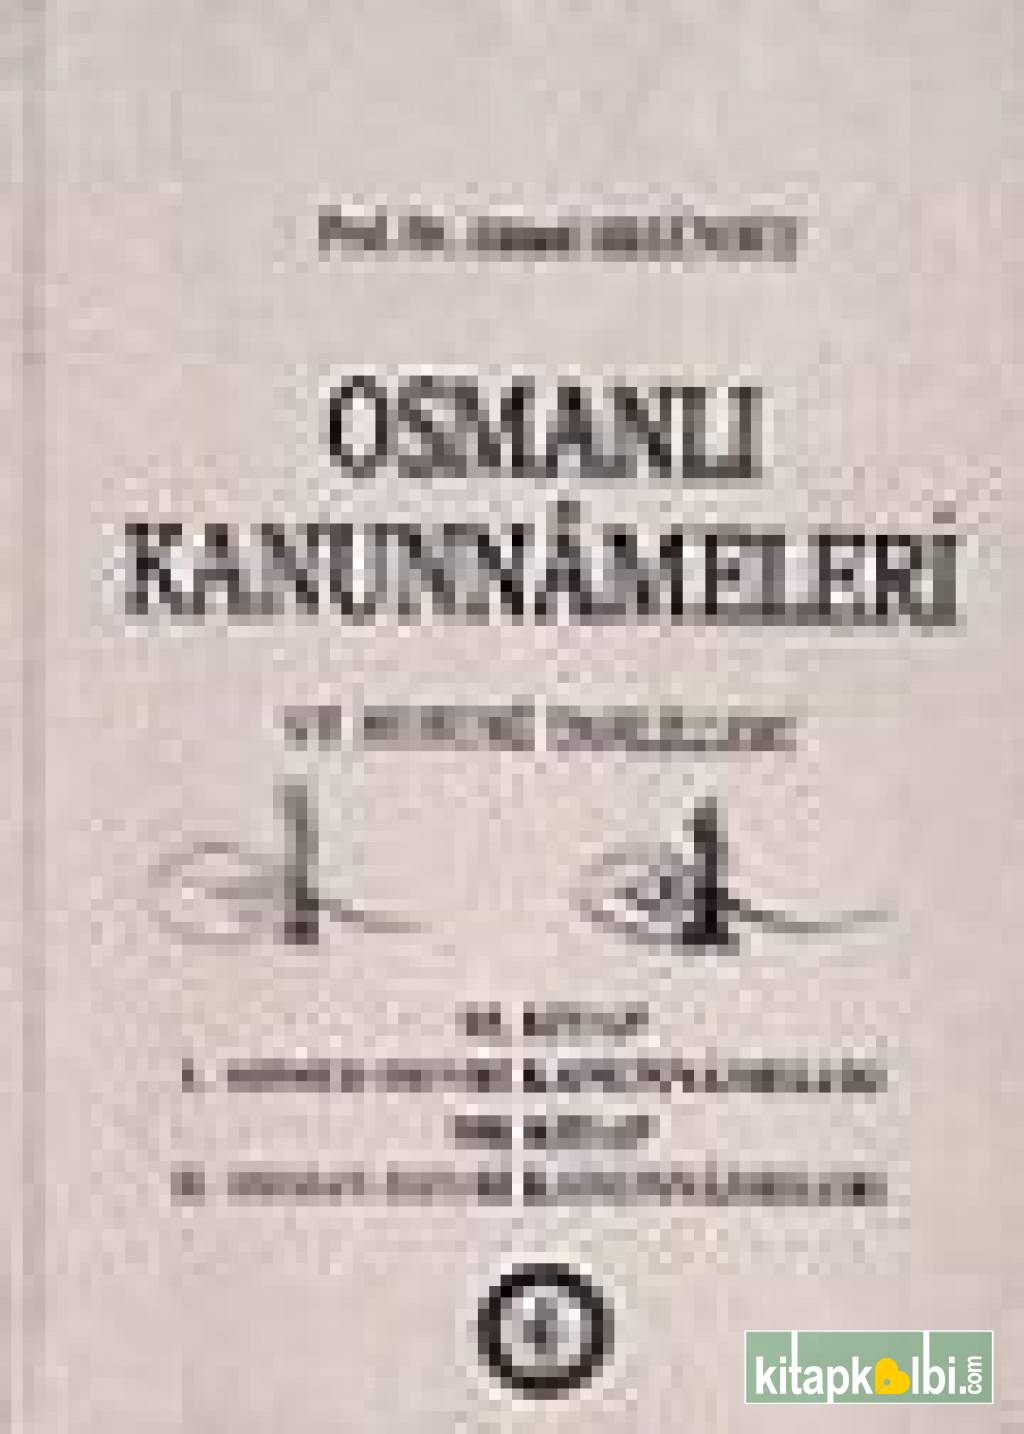 Osmanlı Kanunnameleri ve Hukuki Tahlilleri/ Kanuni Devri Kanunnameleri II. Kısım Eyalet Kan-5